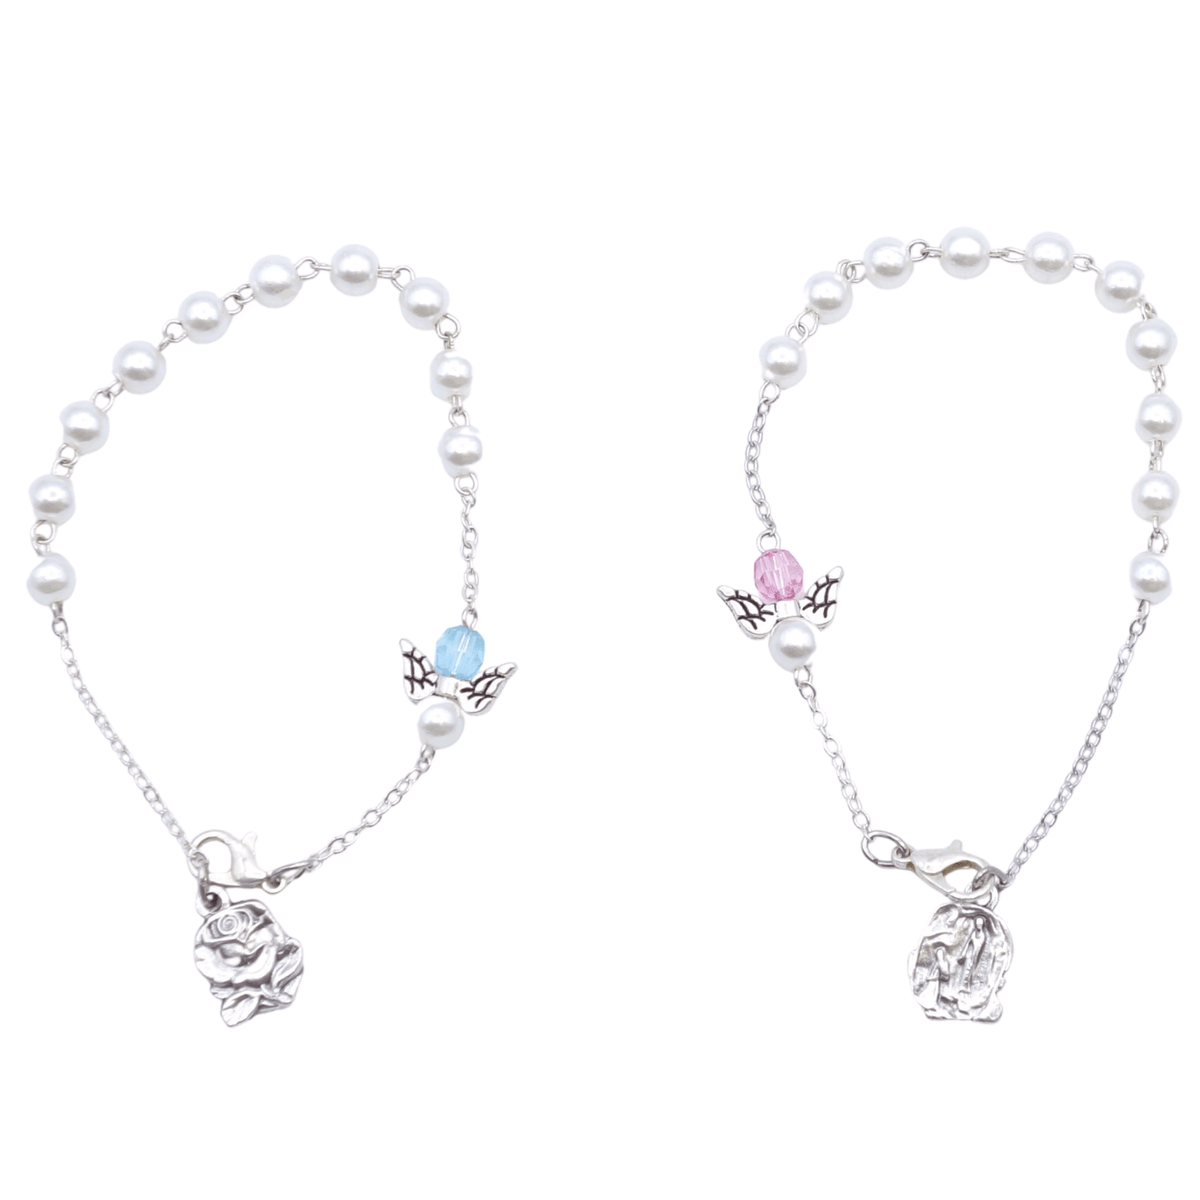 Bracelet imitation perle rose ou bleue plus colombe sur chaine (prix à l'unité) - Bracelet imitation perle rose ou bleue plus colombe sur chaine (prix à l'unité)